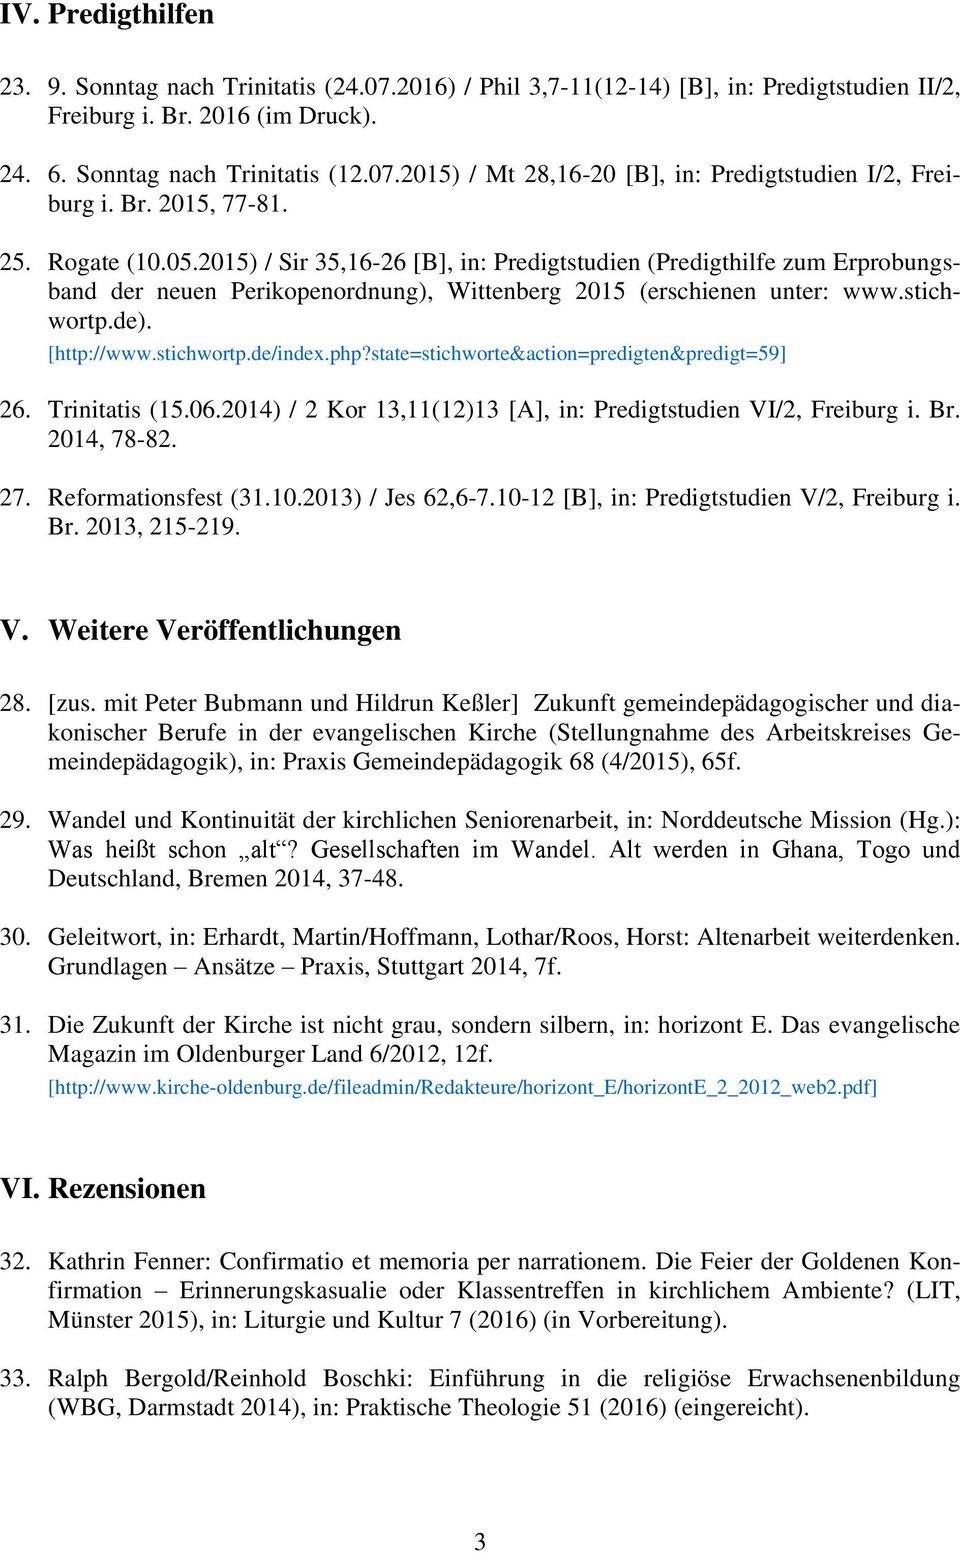 [http://www.stichwortp.de/index.php?state=stichworte&action=predigten&predigt=59] 26. Trinitatis (15.06.2014) / 2 Kor 13,11(12)13 [A], in: Predigtstudien VI/2, Freiburg i. Br. 2014, 78-82. 27.